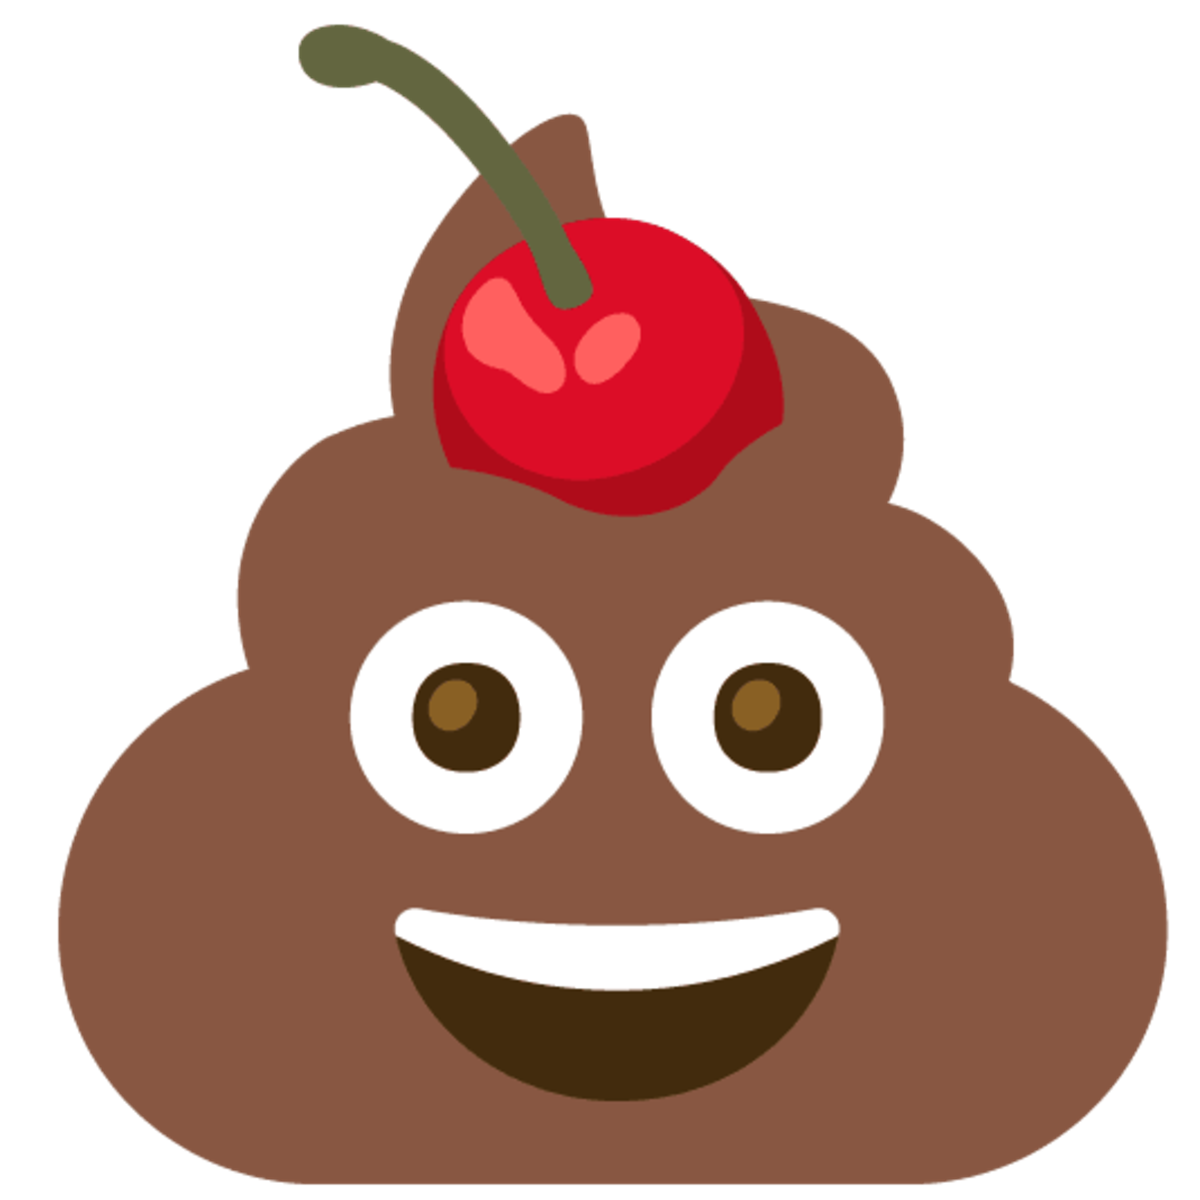 Emoji de caca con una cereza encima